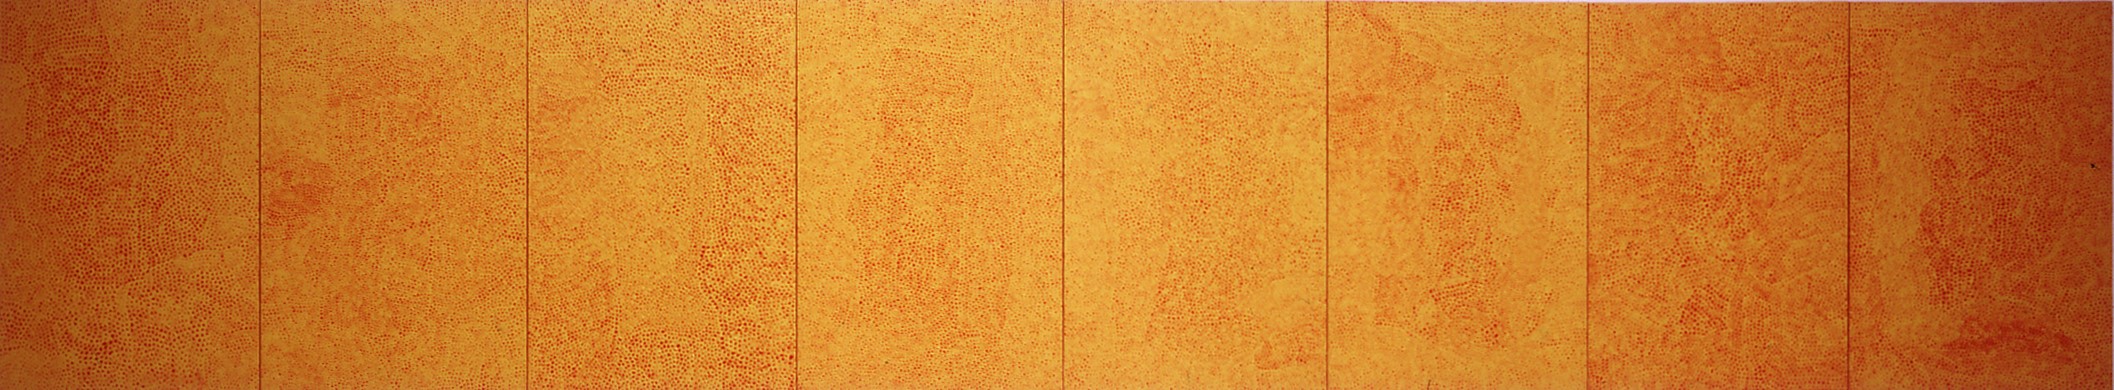 草間彌生  | 無限的網(E.T.A.) 壓克力、畫布, 2000 194 x 1042.4 cm  私人收藏 的圖說